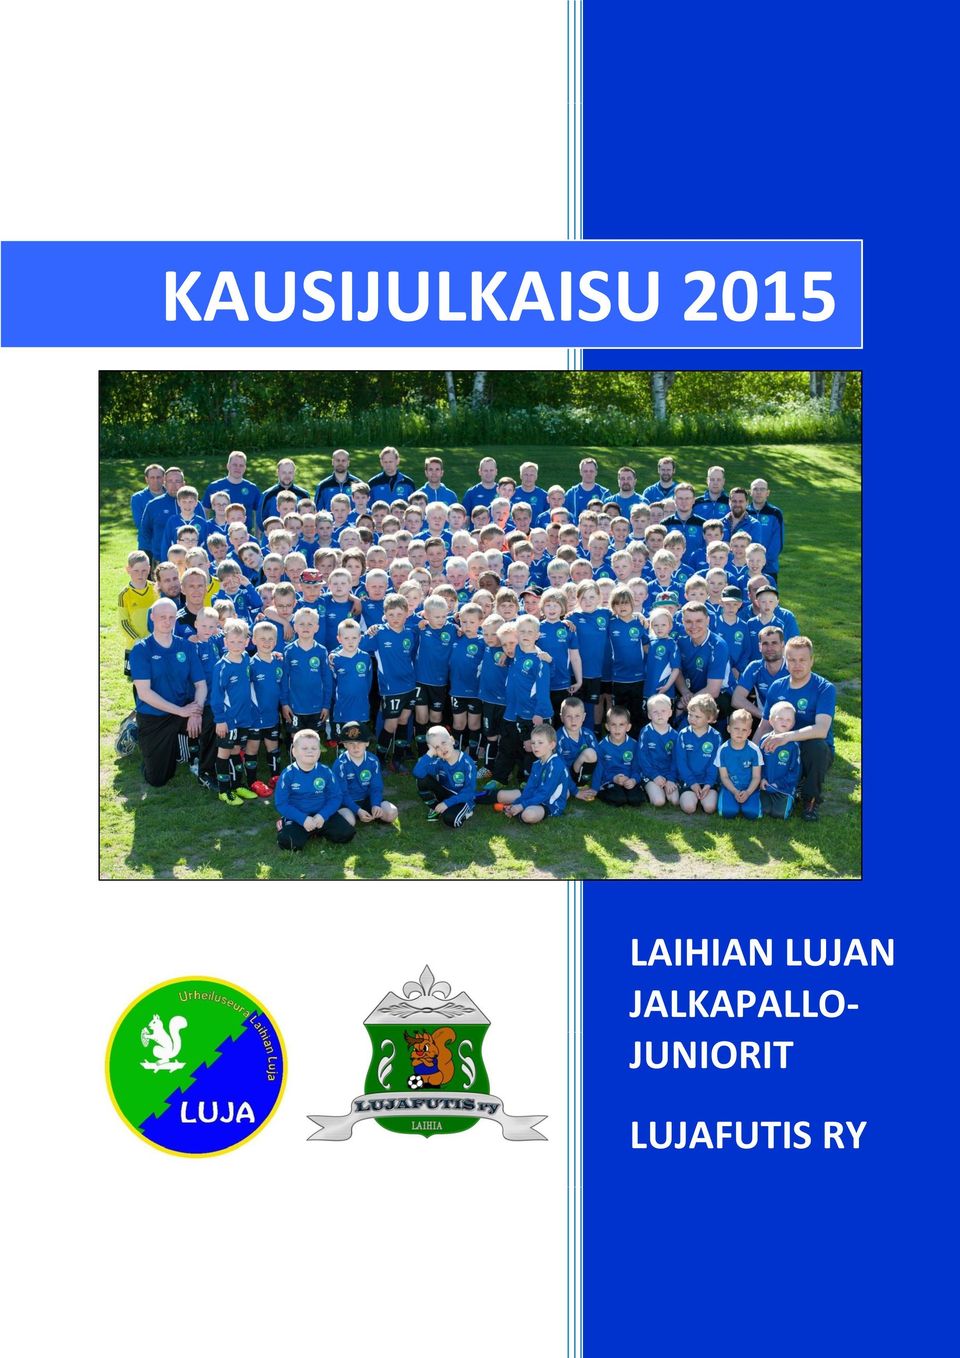 KAUSIJULKAISU 2015 LAIHIAN LUJAN JALKAPALLO- JUNIORIT LUJAFUTIS RY - PDF  Free Download